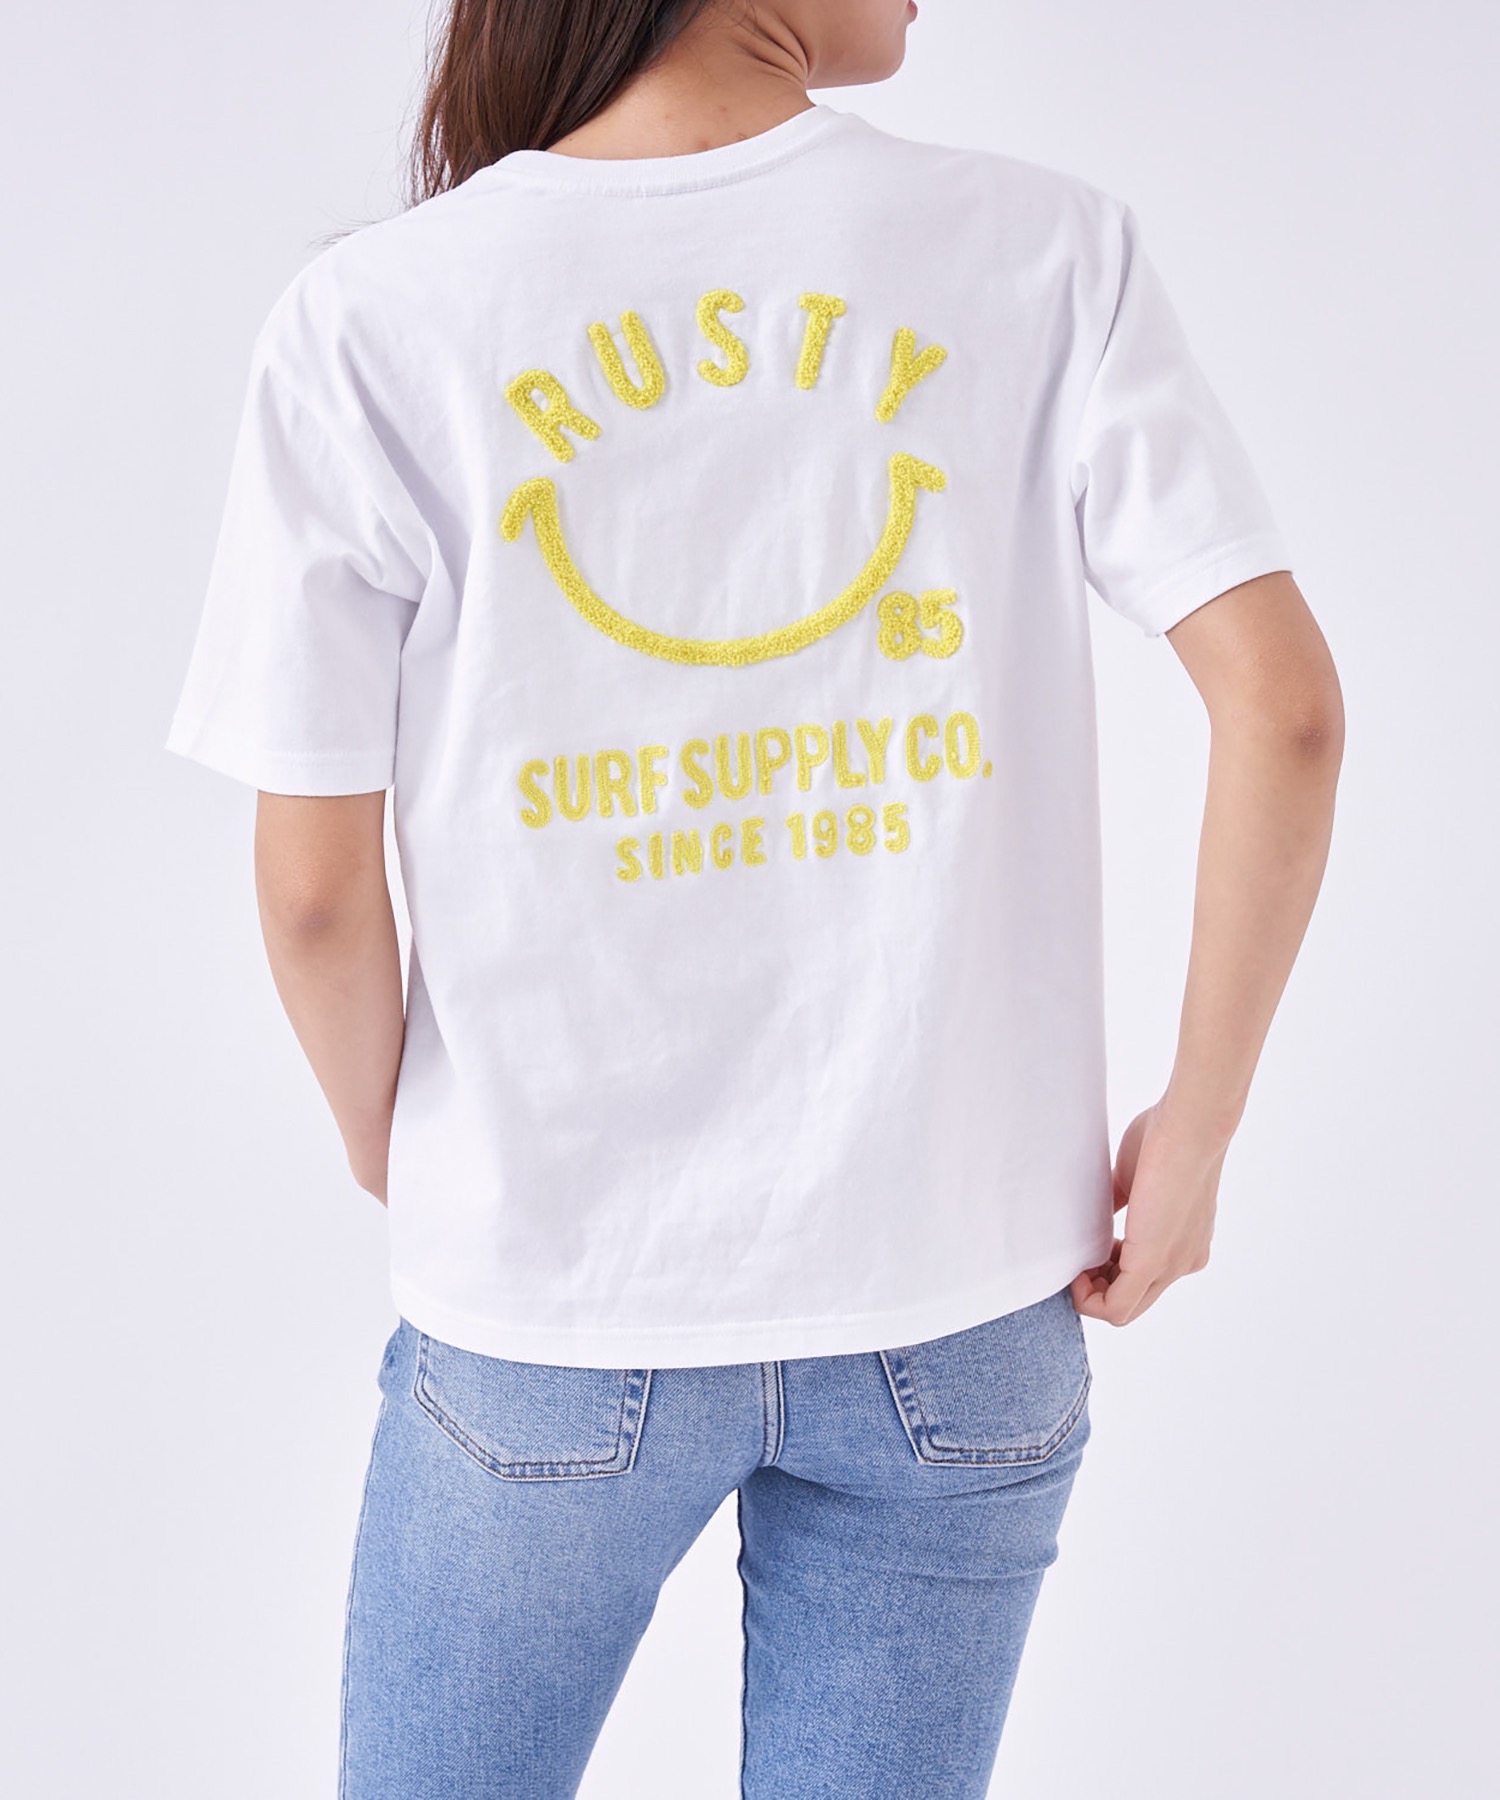 工場直送 RUSTY 超格安価格 RUSTY:ラスティー レディースバックプリントTシャツ